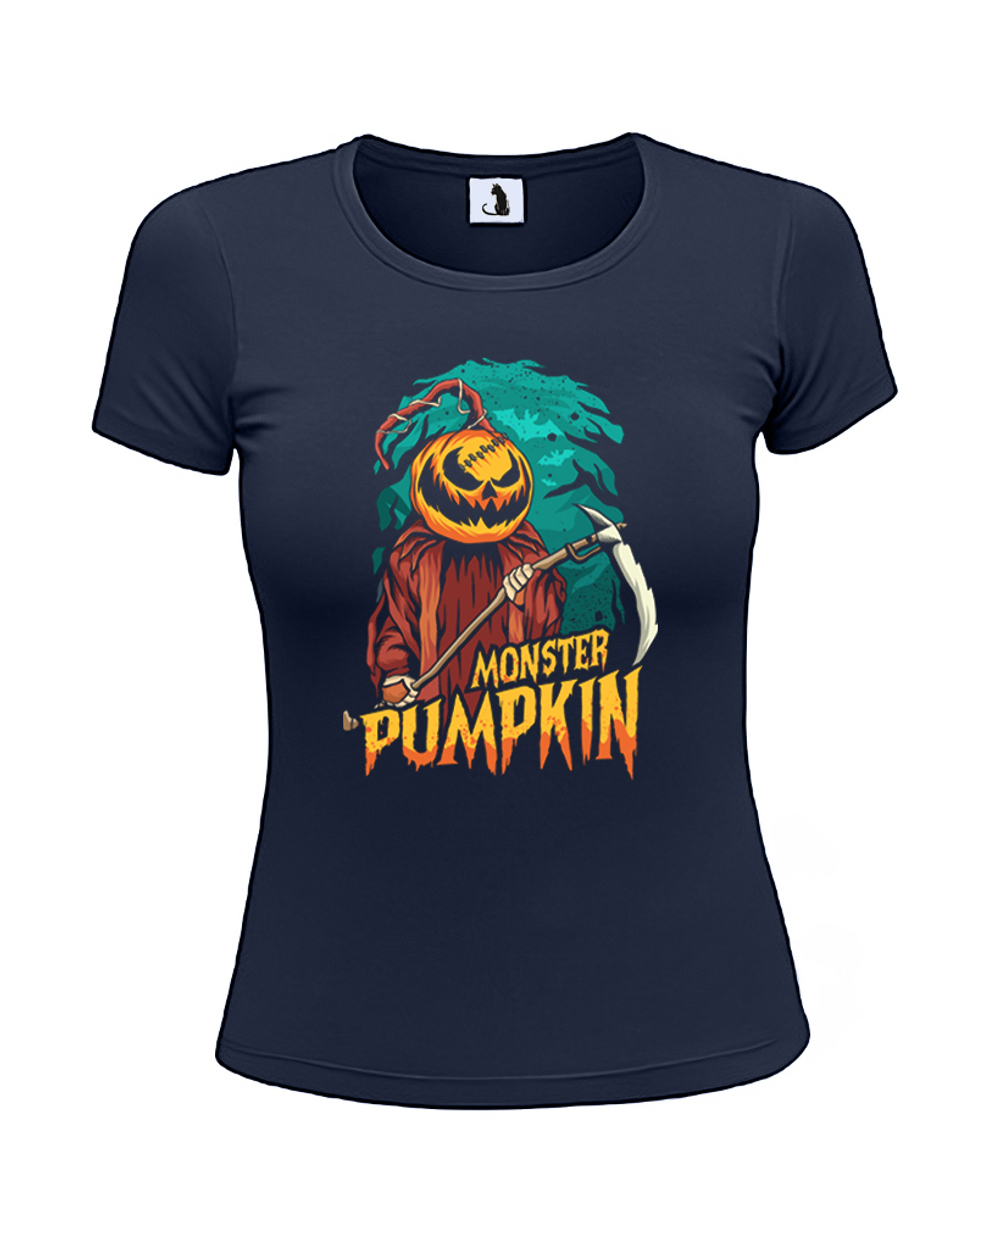 Футболка Monster Pumpkin женская приталенная темно-синяя